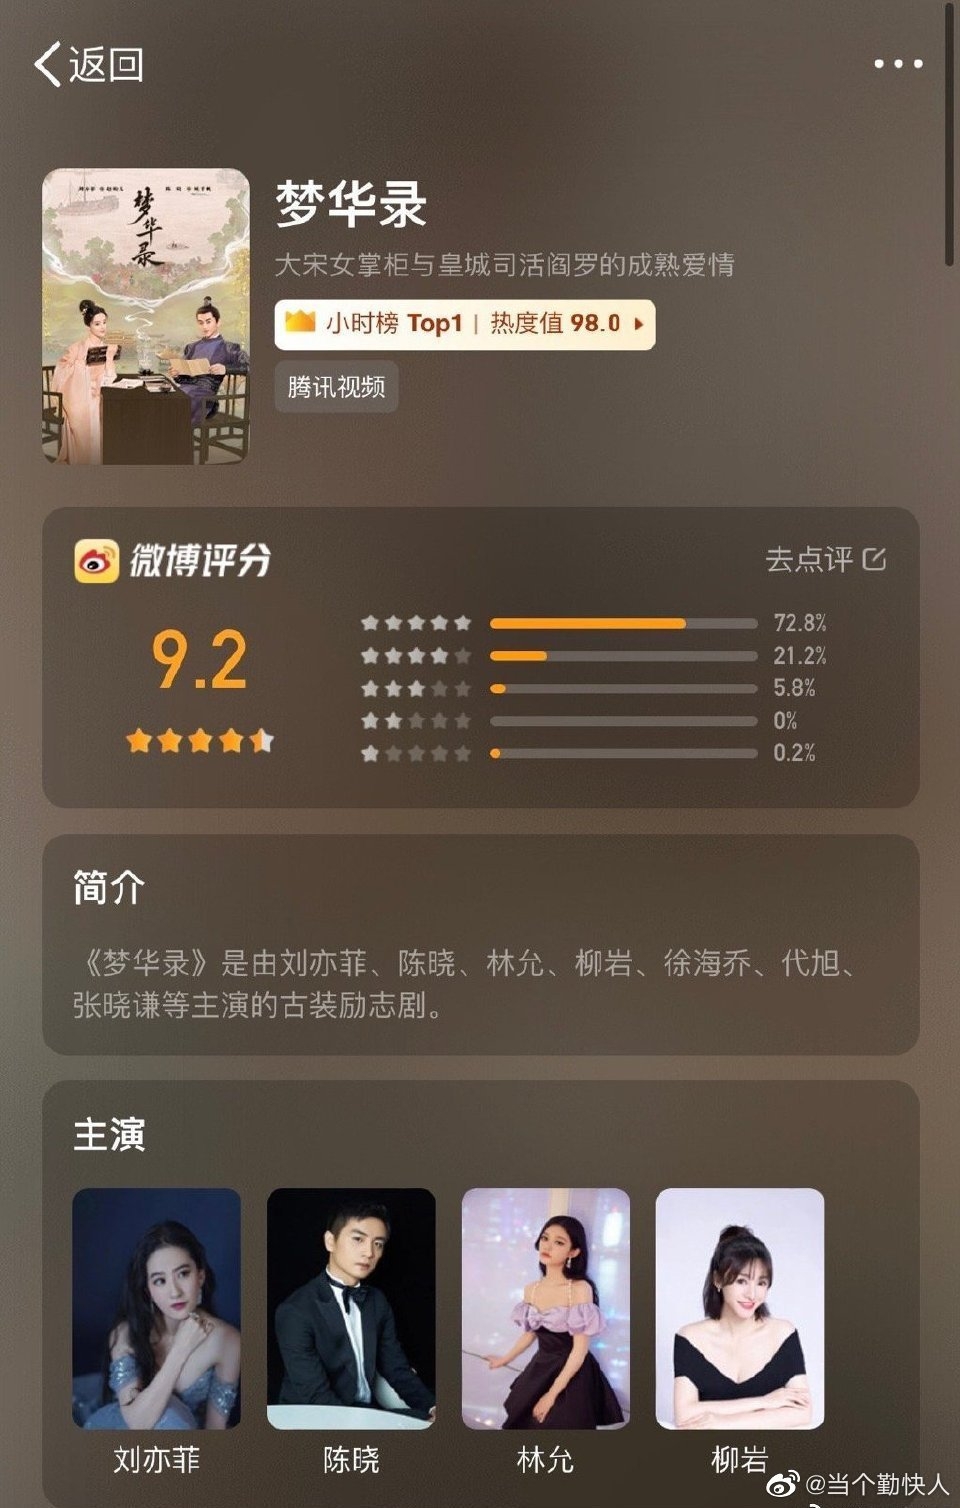 'Mộng Hoa Lục' của Lưu Diệc Phi và Trần Hiểu phá mốc 1 tỷ lượt xem, điểm đánh giá Weibo gần như tuyệt đối